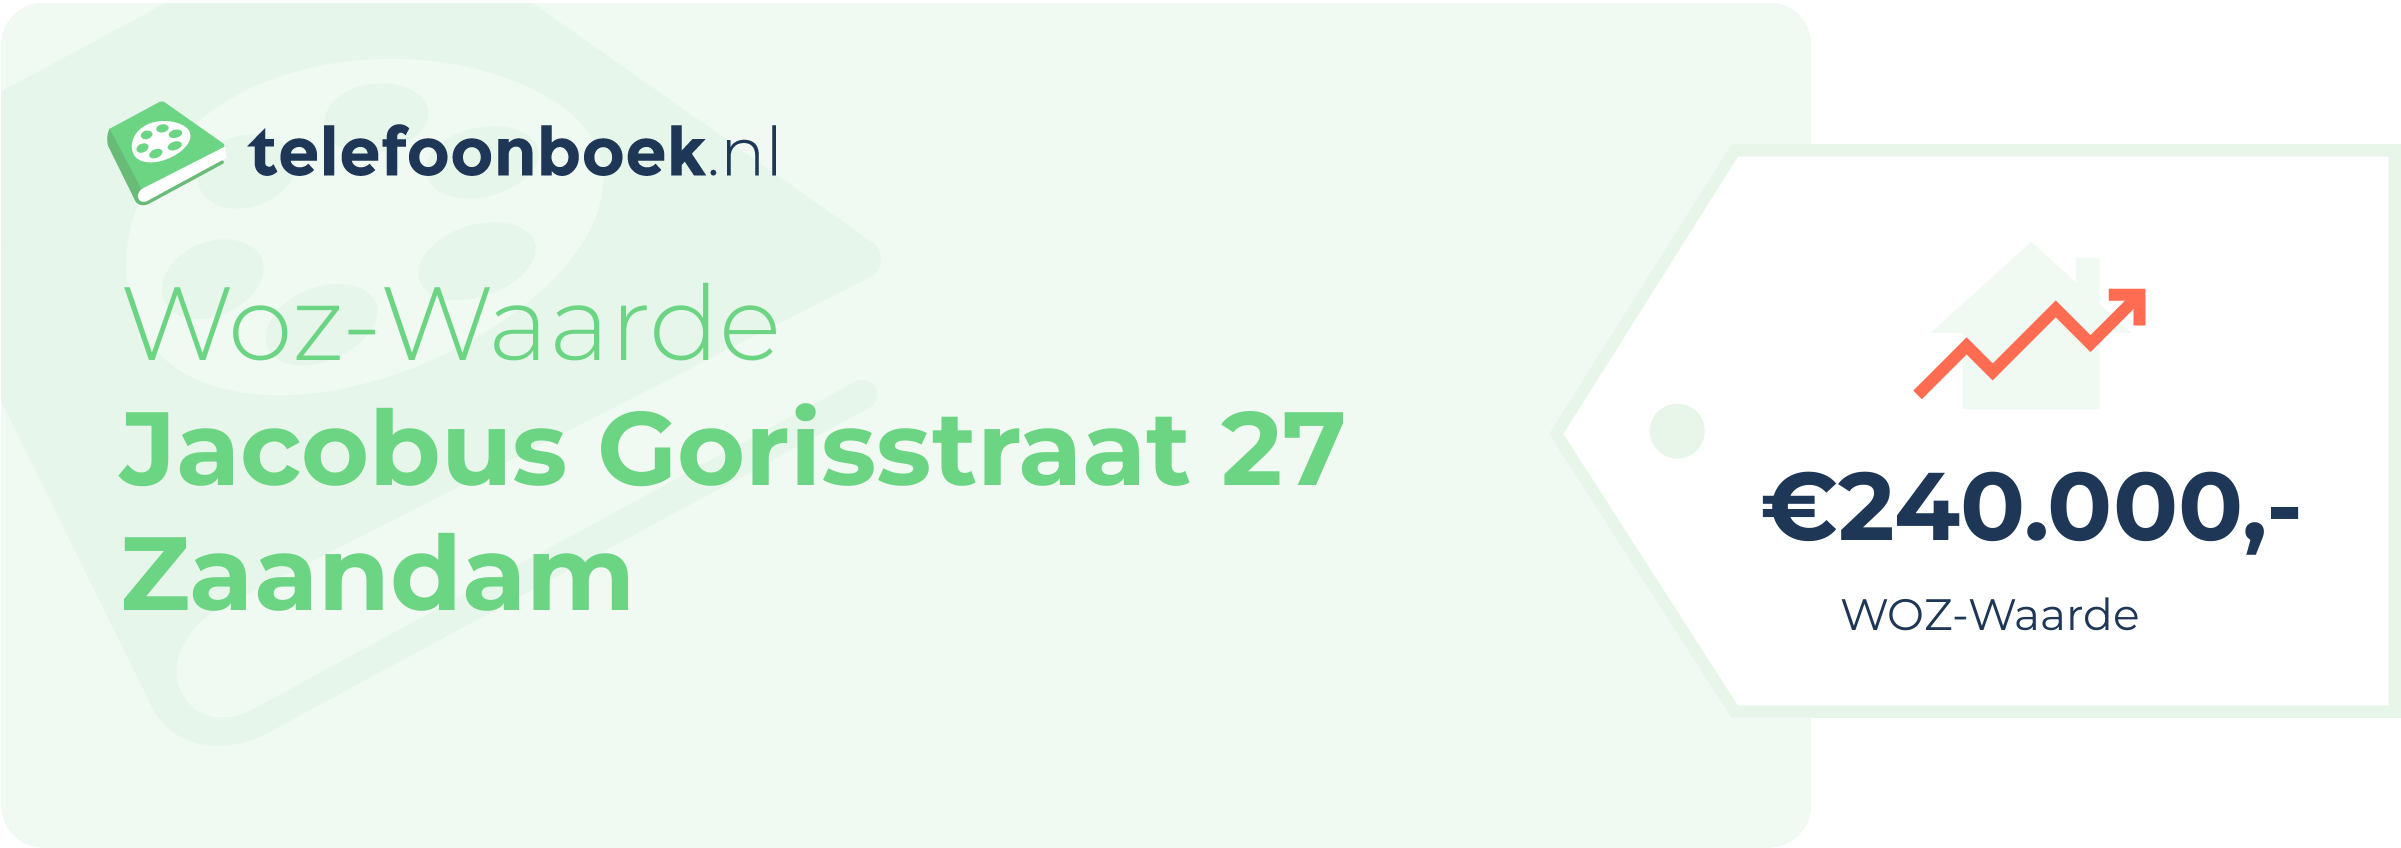 WOZ-waarde Jacobus Gorisstraat 27 Zaandam